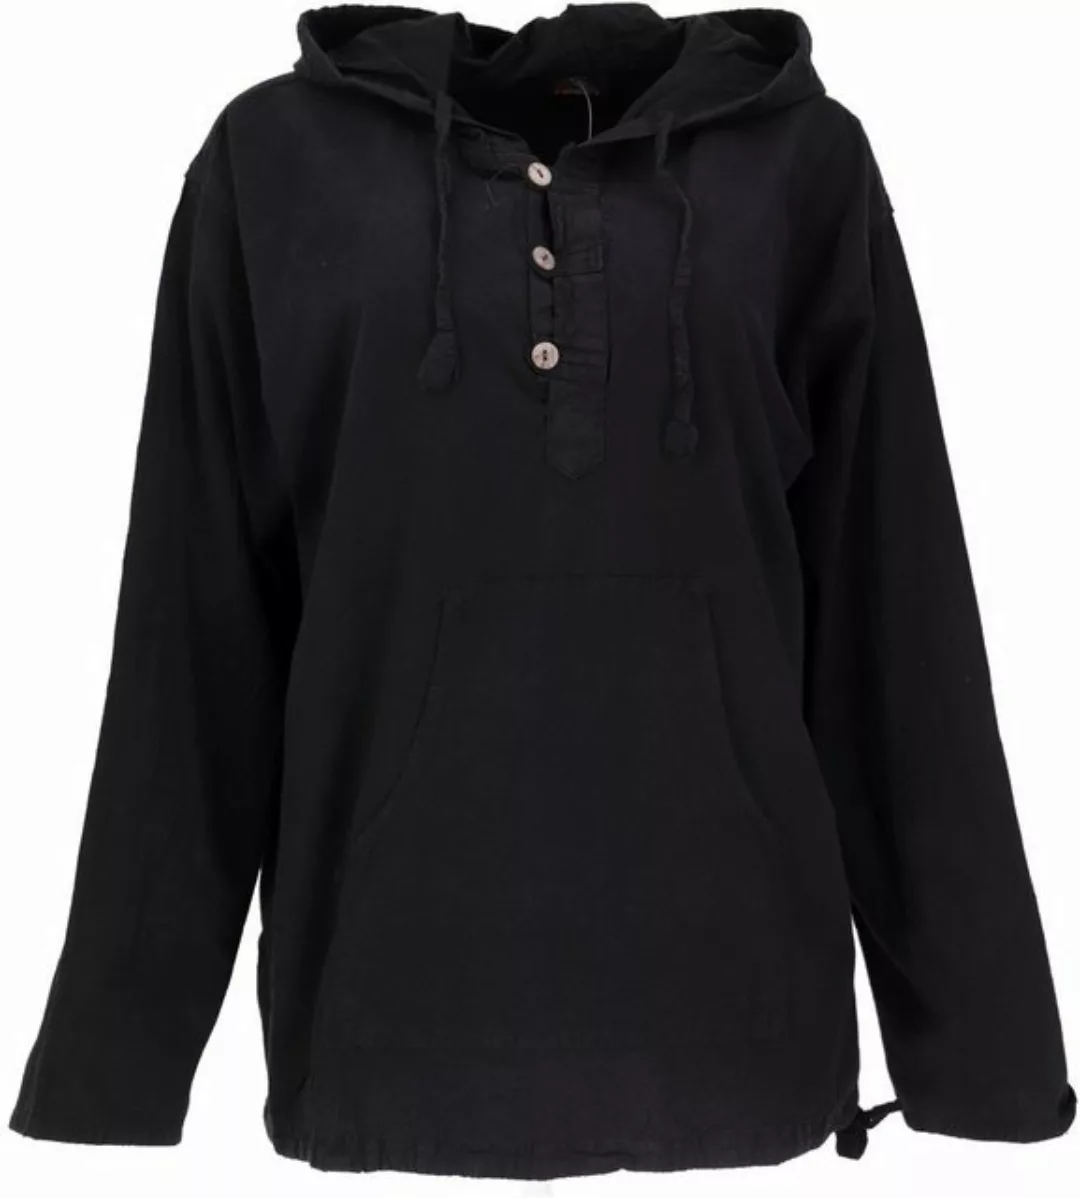 Guru-Shop Sweater Ethno Sweatshirt Goa Hippie - schwarz alternative Bekleid günstig online kaufen